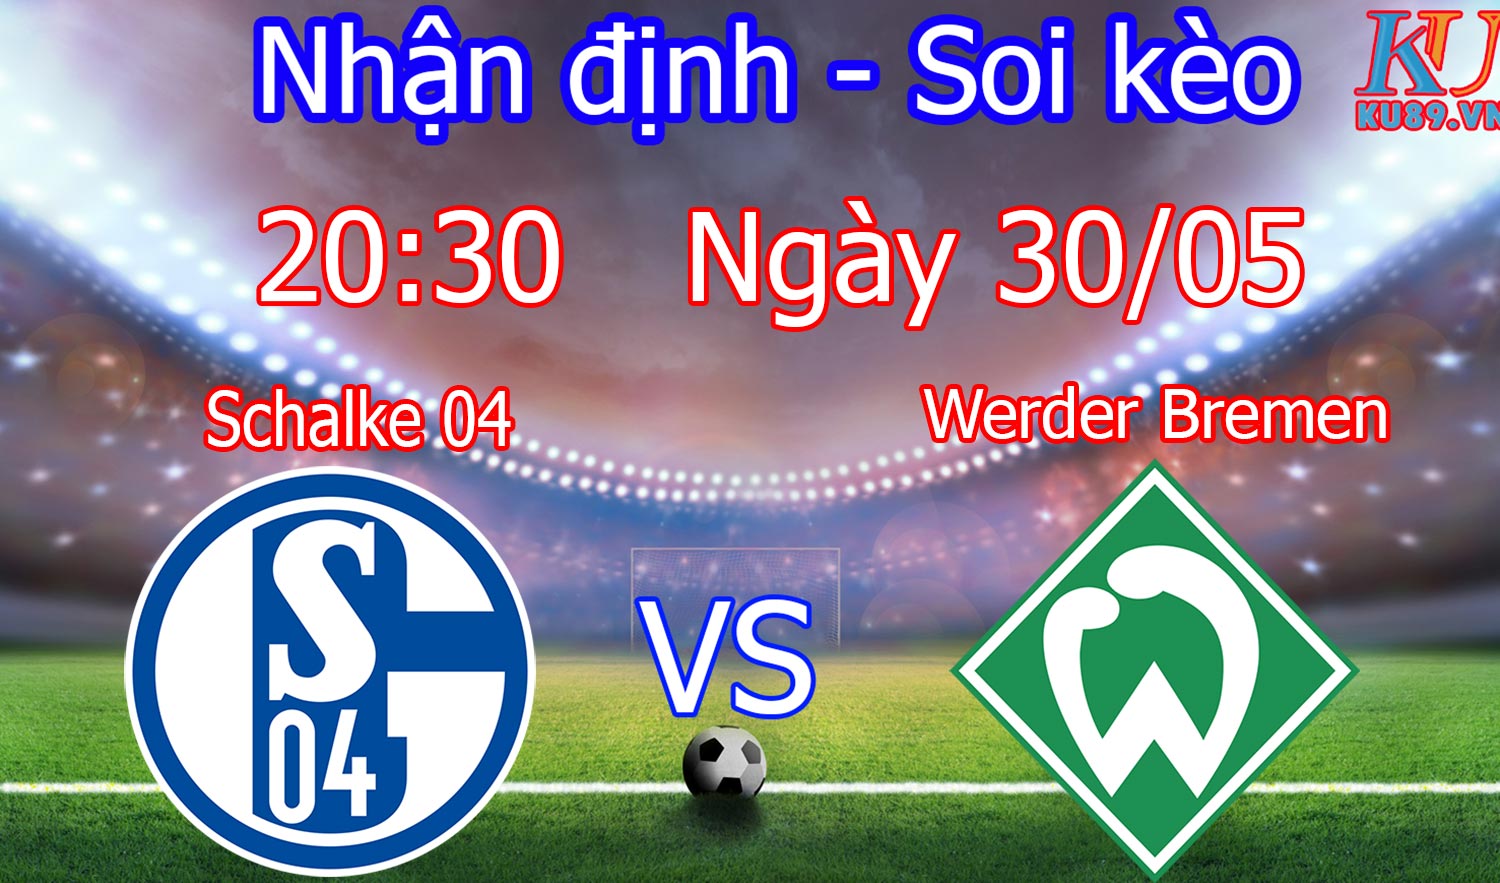 BD Schalke 04 – Werder Bremen